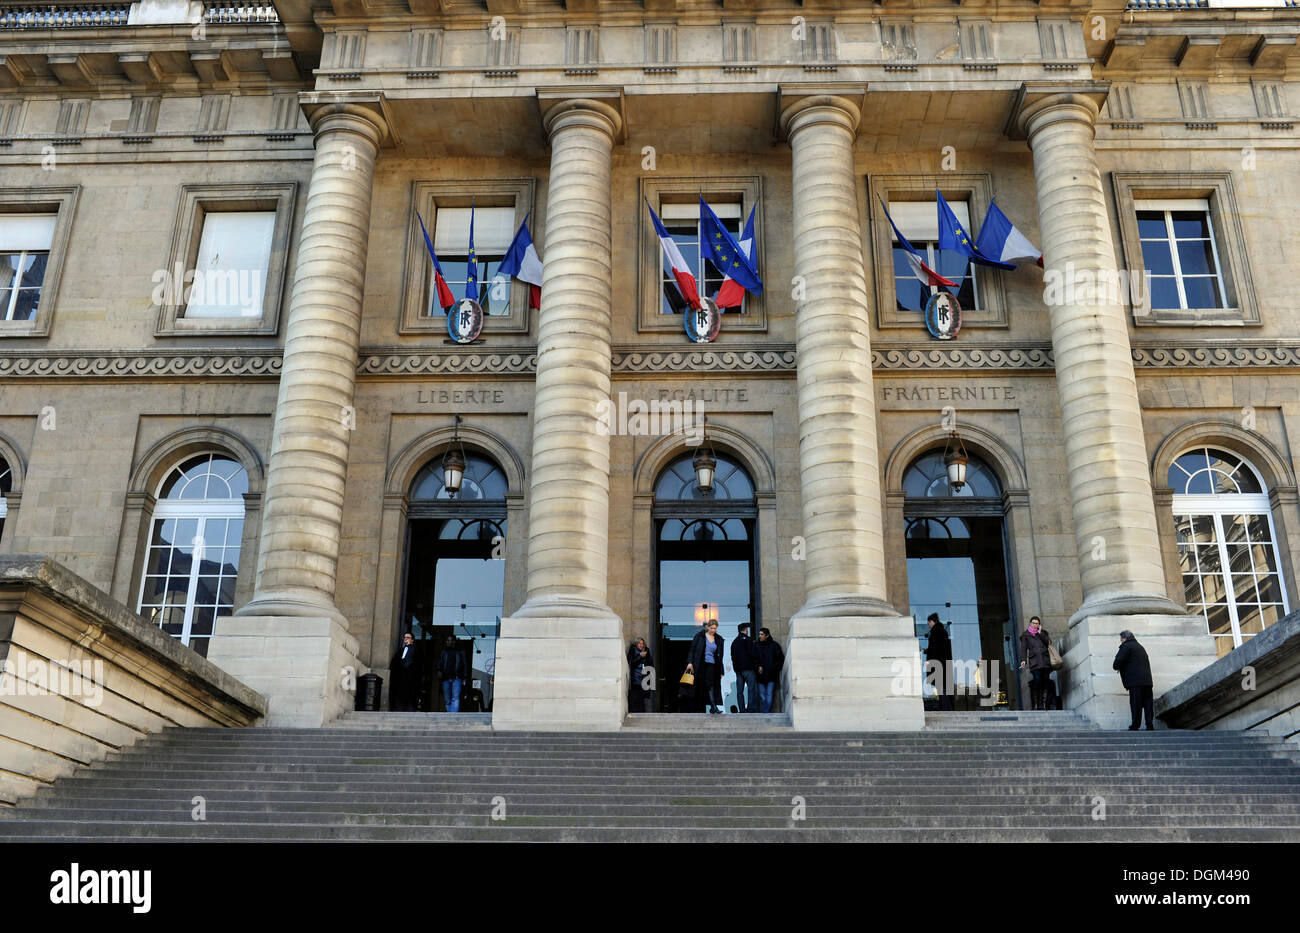 Front facade, Palace of Justice, Palais de Justice, inscription Liberté, Égalité, Fraternité, Paris, France, Europe Stock Photo